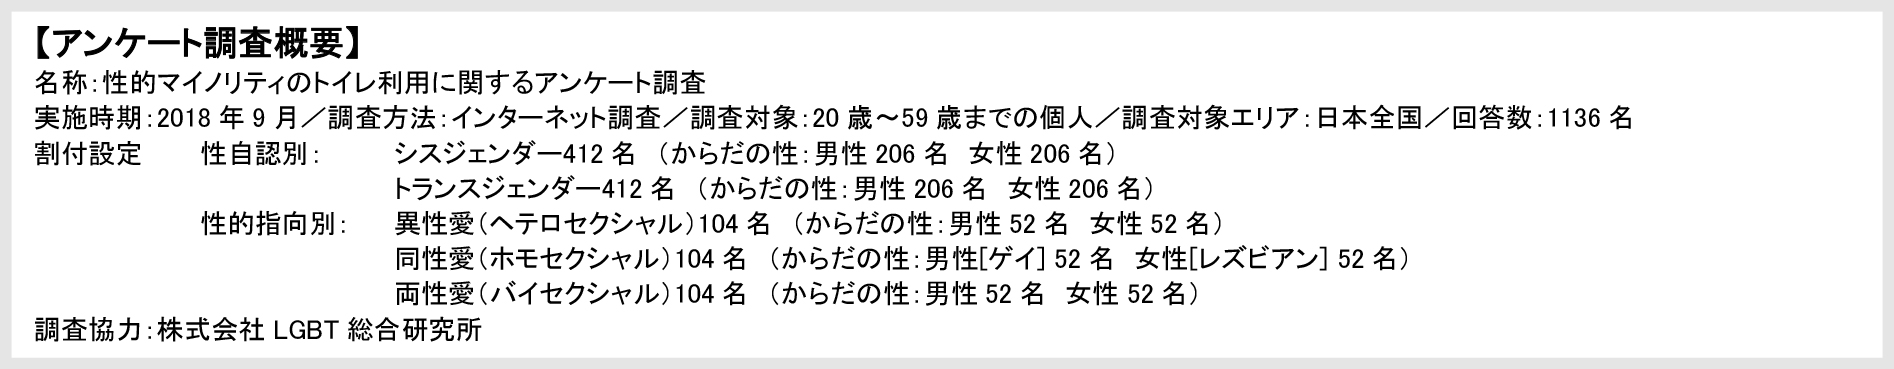 【アンケート調査概要】名称：性的マイノリティのトイレ利用に関するアンケート調査 実施時期：2018年9月／調査方法：インターネット調査／調査対象：20歳～59歳までの個人／調査対象エリア：日本全国／回答数：1136名 割付設定	性自認別：シスジェンダー412名（からだの性：男性206名　女性206名） トランスジェンダー412名　（からだの性：男性206名　女性206名） 性的指向別：異性愛（ヘテロセクシャル）104名（からだの性：男性52名　女性52名） 同性愛（ホモセクシャル）104名（からだの性：男性[ゲイ] 52名　女性[レズビアン] 52名） 両性愛（バイセクシャル）104名（からだの性：男性52名 女性52名） 調査協力：株式会社LGBT総合研究所